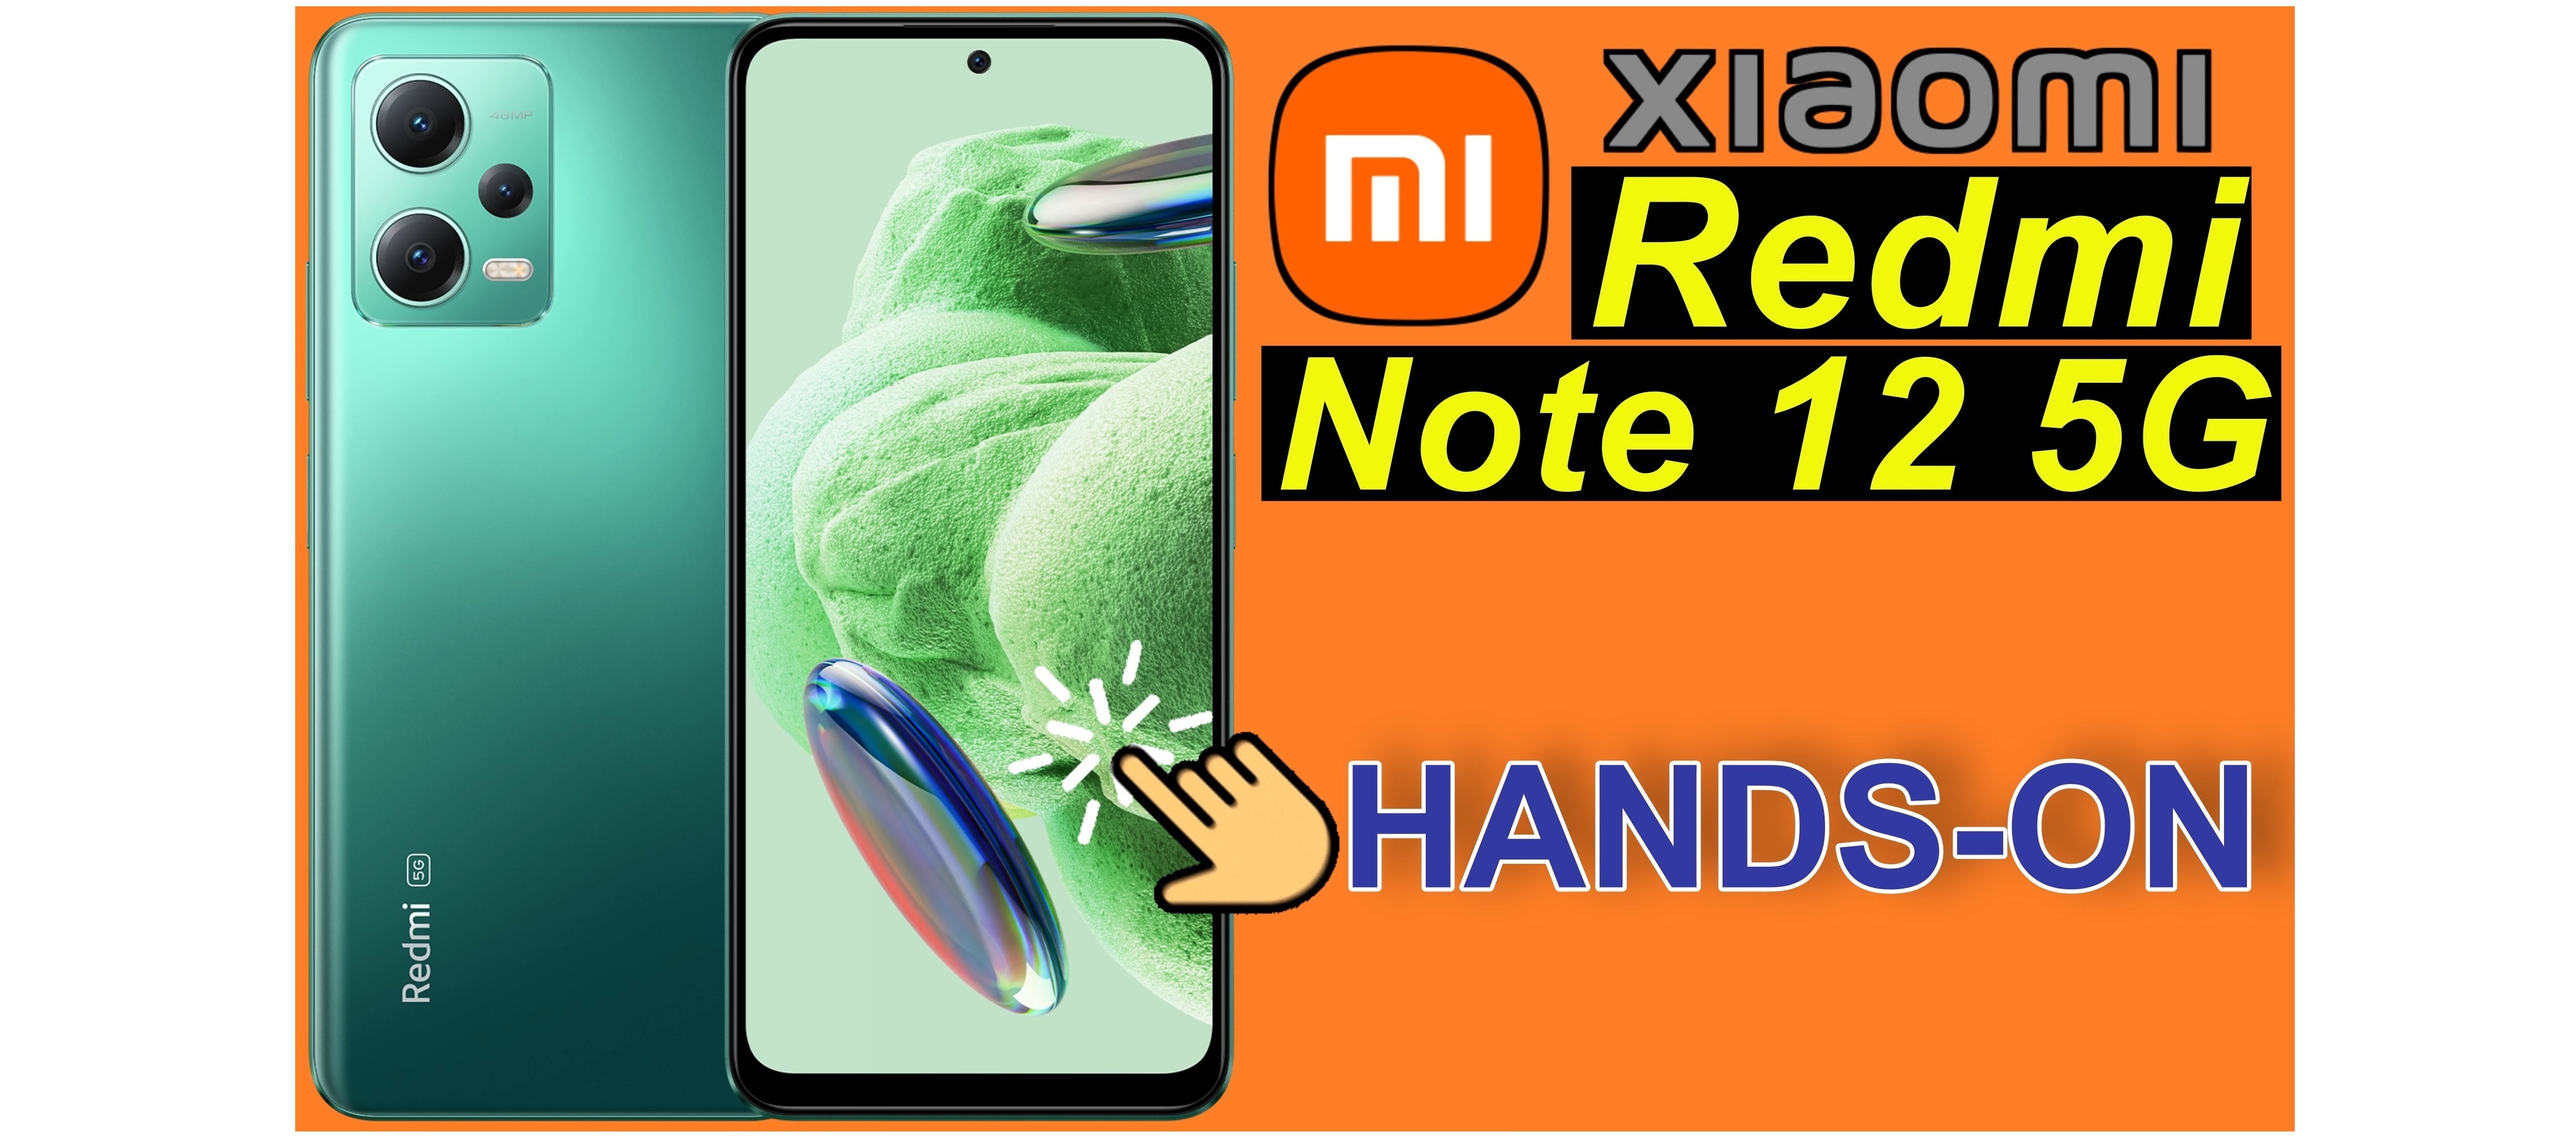 Xiaomi Redmi Note 12 5G - Unboxing und Hands-on